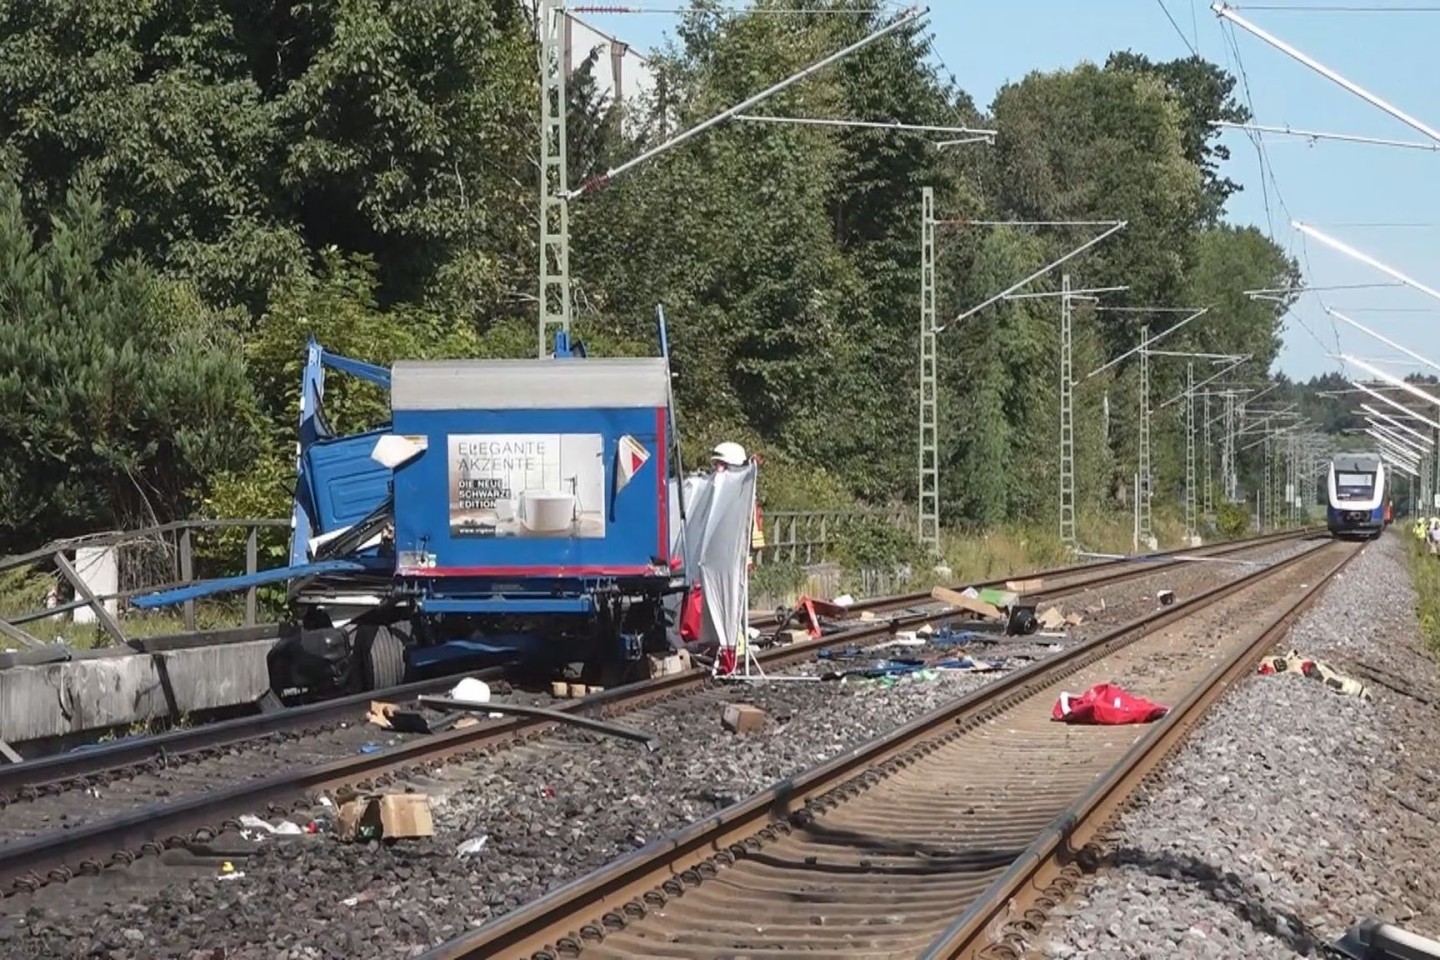 An einem Bahnübergang in Rastede ist ein Lastwagen von einem Zug erfasst worden.